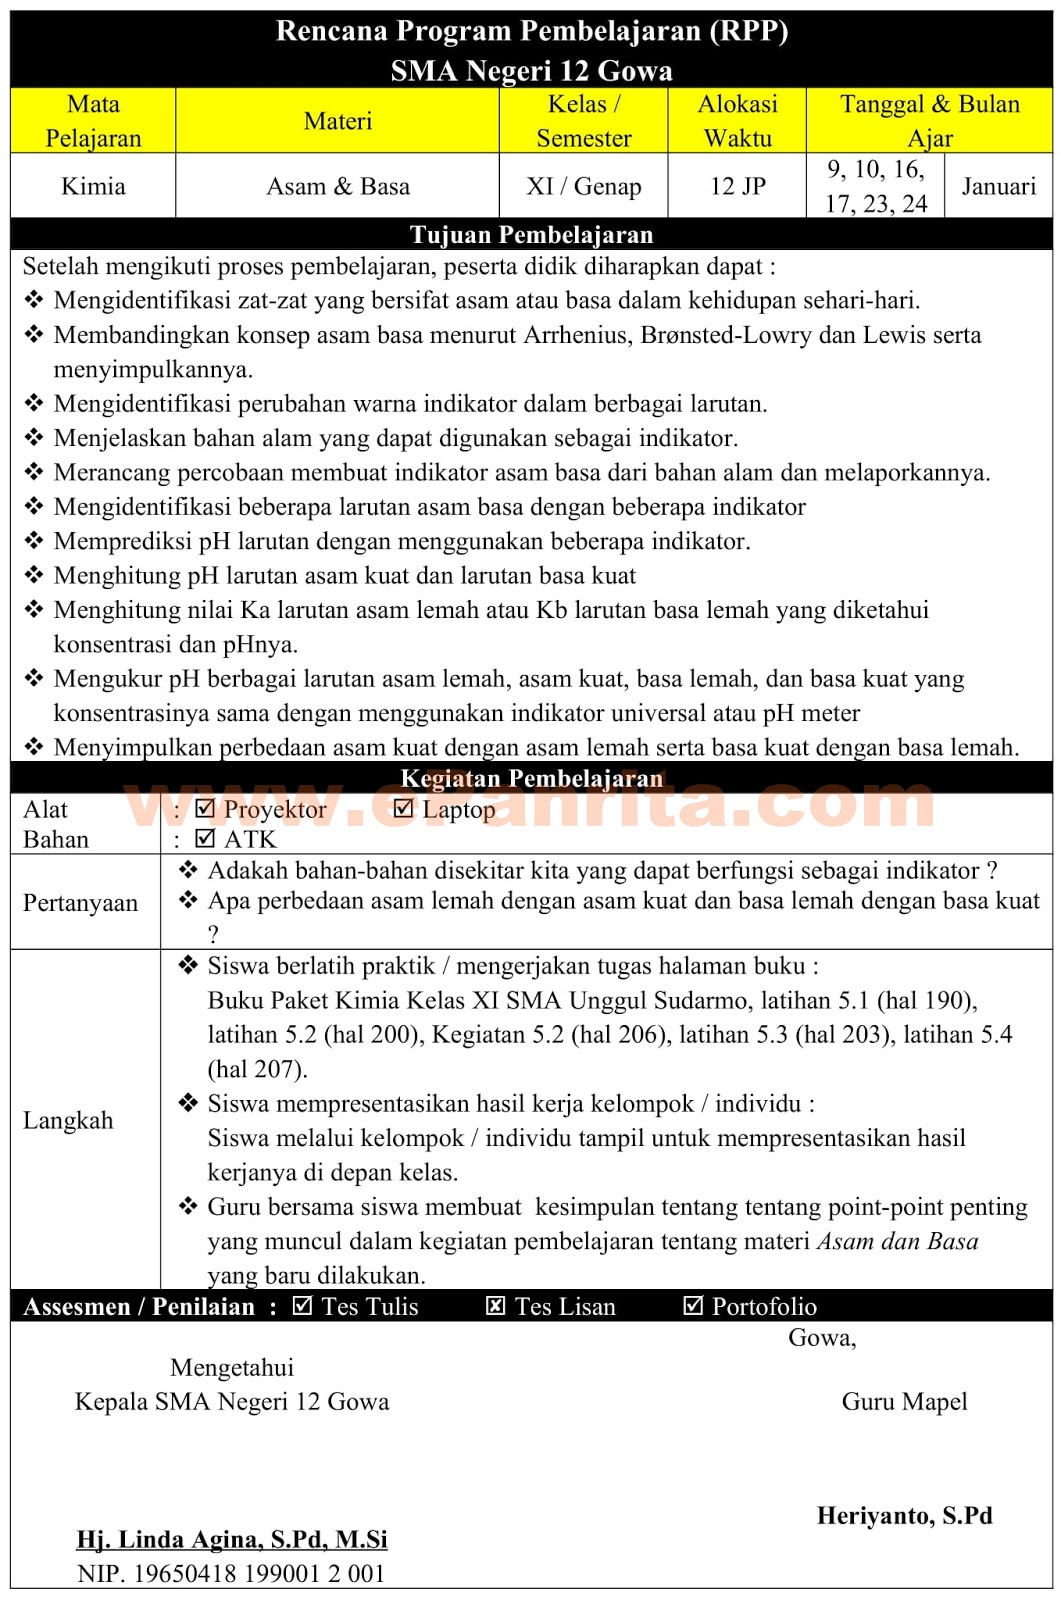 Download Contoh Rpp Pai 1 Lembar Kelas 7 K13 Revisi 2020 Mobile Legends